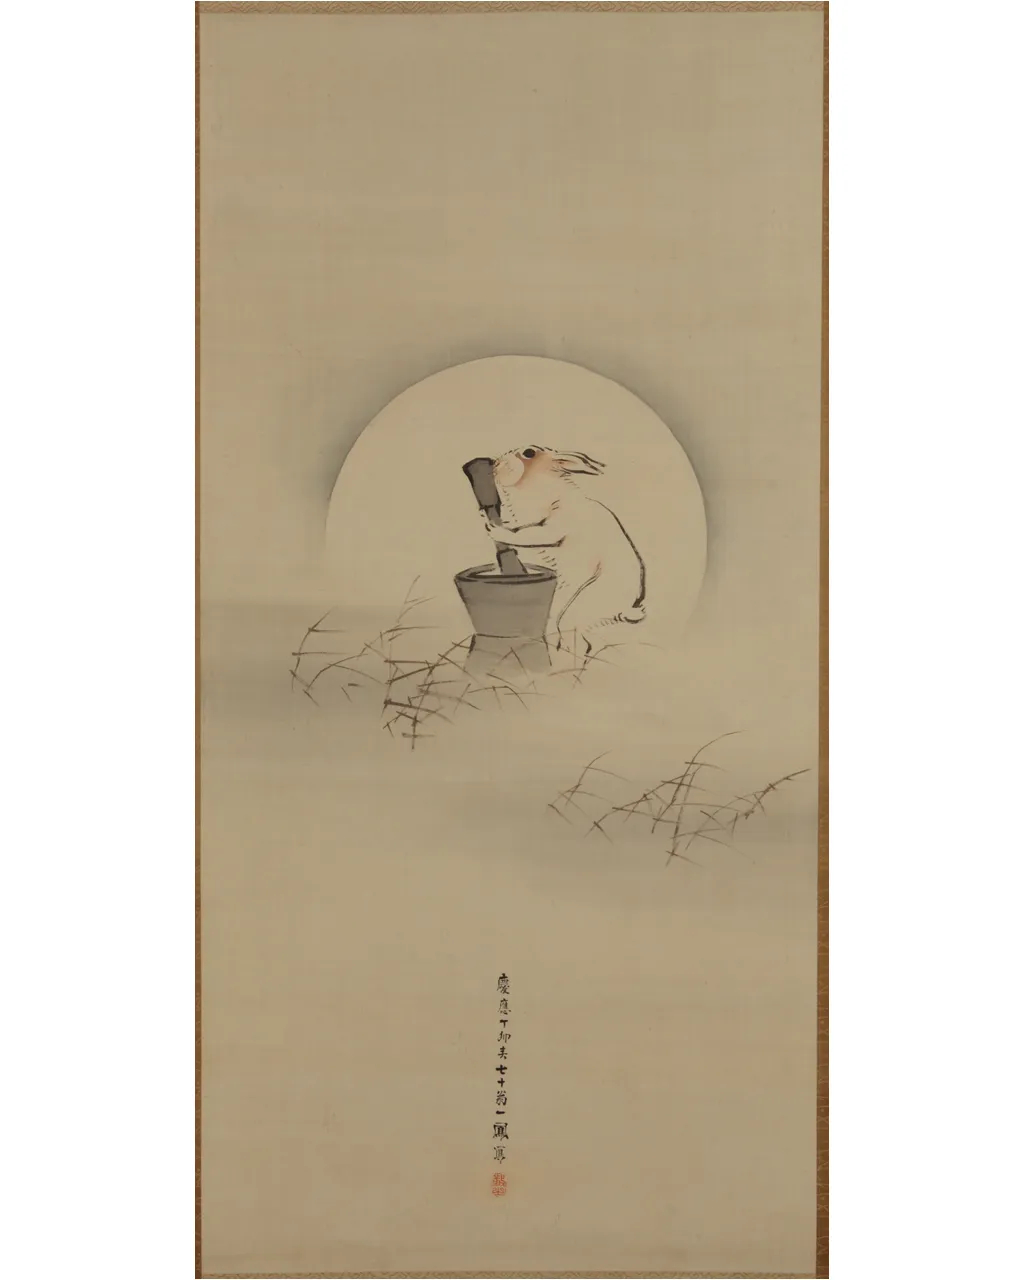 Conejo moliendo el elixir de la vida bajo la Luna, de Mori Ippo, 1867.